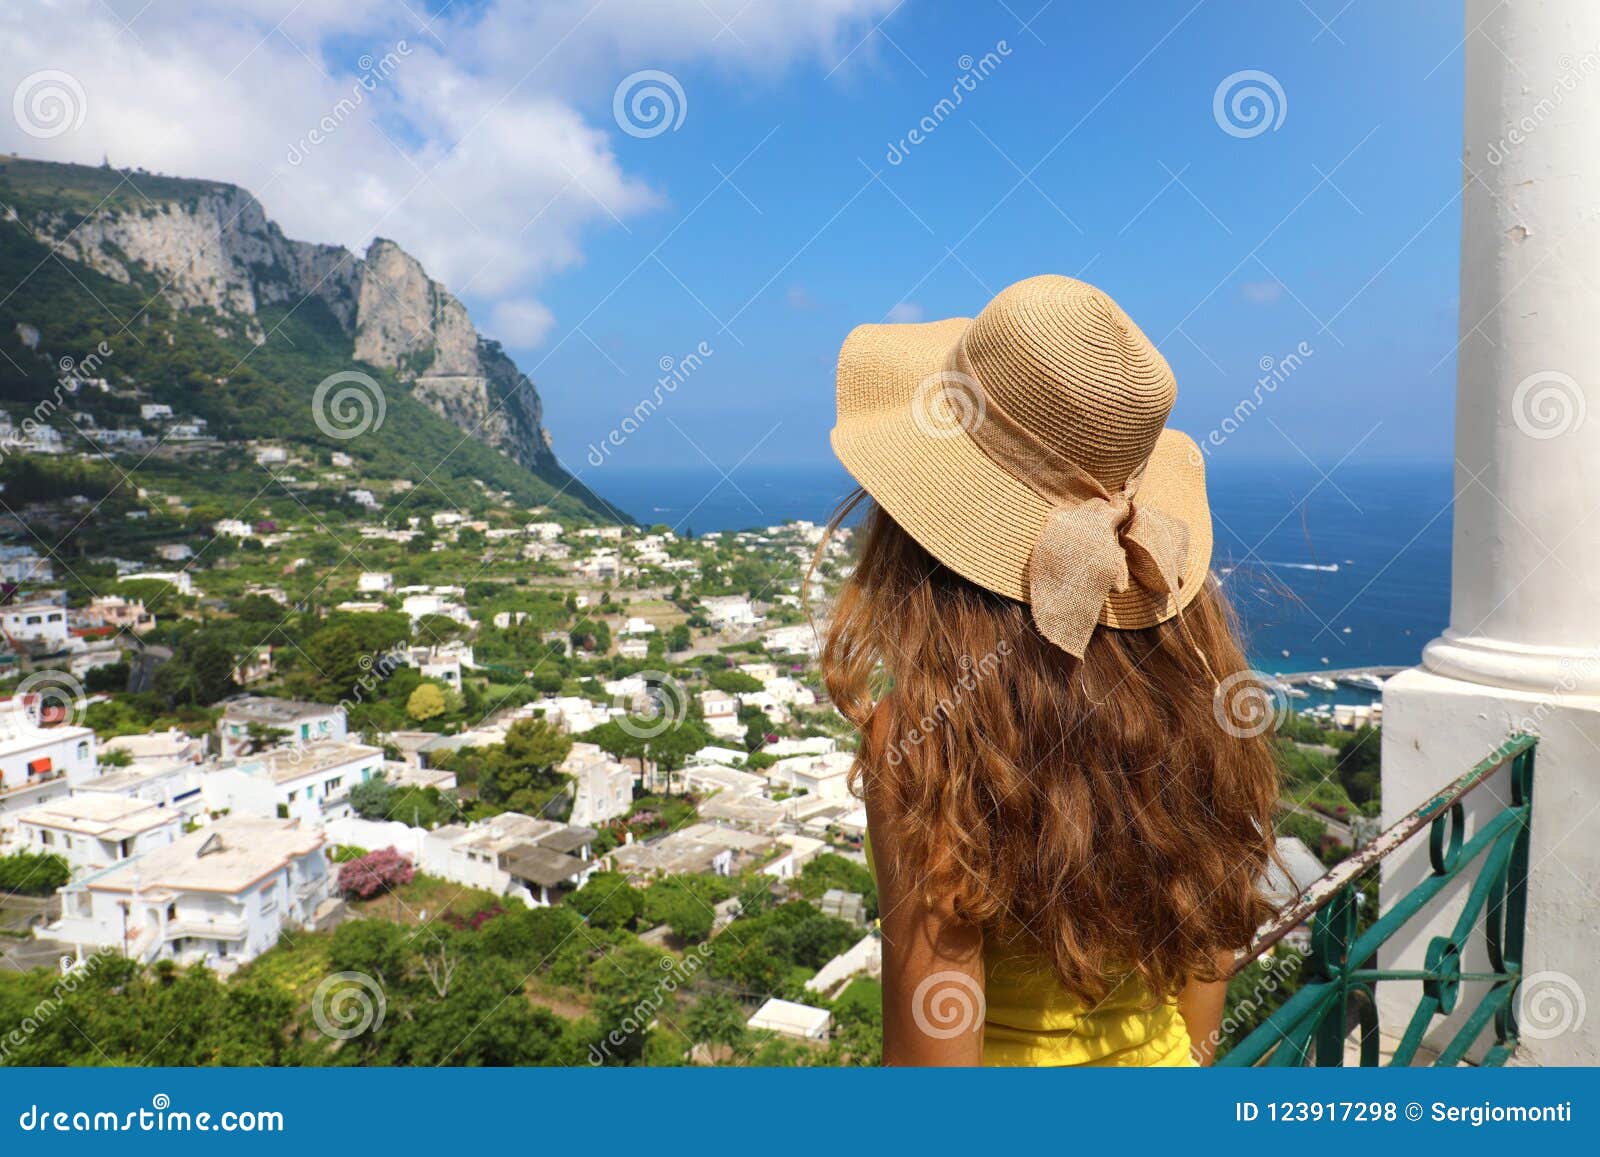 Chapeaux de paille Capri